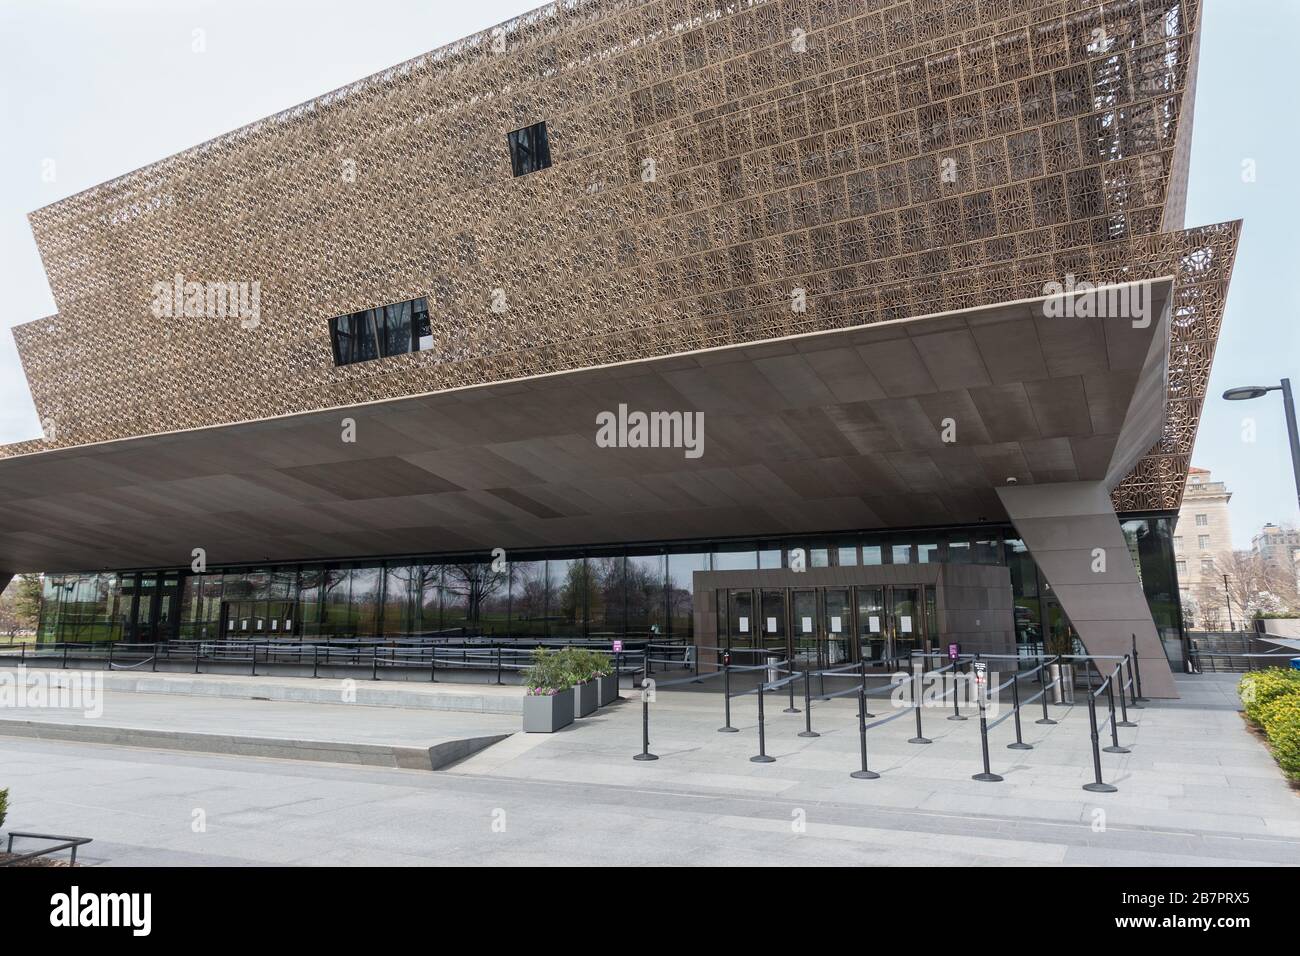 Normalerweise voller Touristen, ist der Eingang zum Museum of African American History and Culture in Washington, DC verlassen, da alle Museen wegen Vorsichtsmaßnahmen für Coronavirus geschlossen wurden. März 2020. Stockfoto